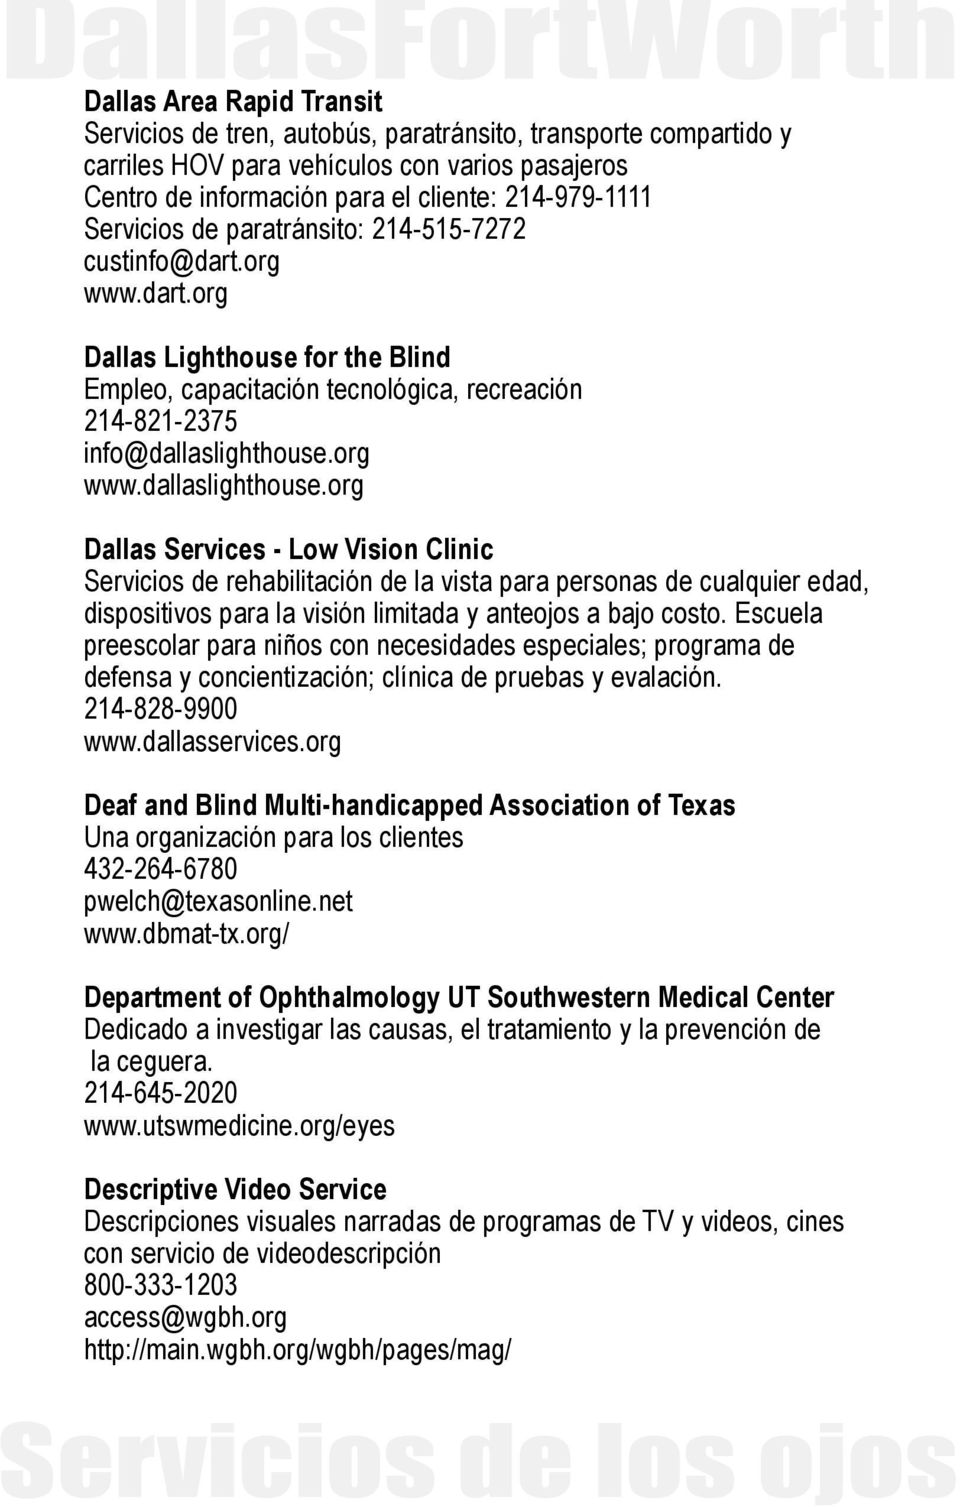 org www.dallaslighthouse.org Dallas Services - Low Vision Clinic Servicios de rehabilitación de la vista para personas de cualquier edad, dispositivos para la visión limitada y anteojos a bajo costo.